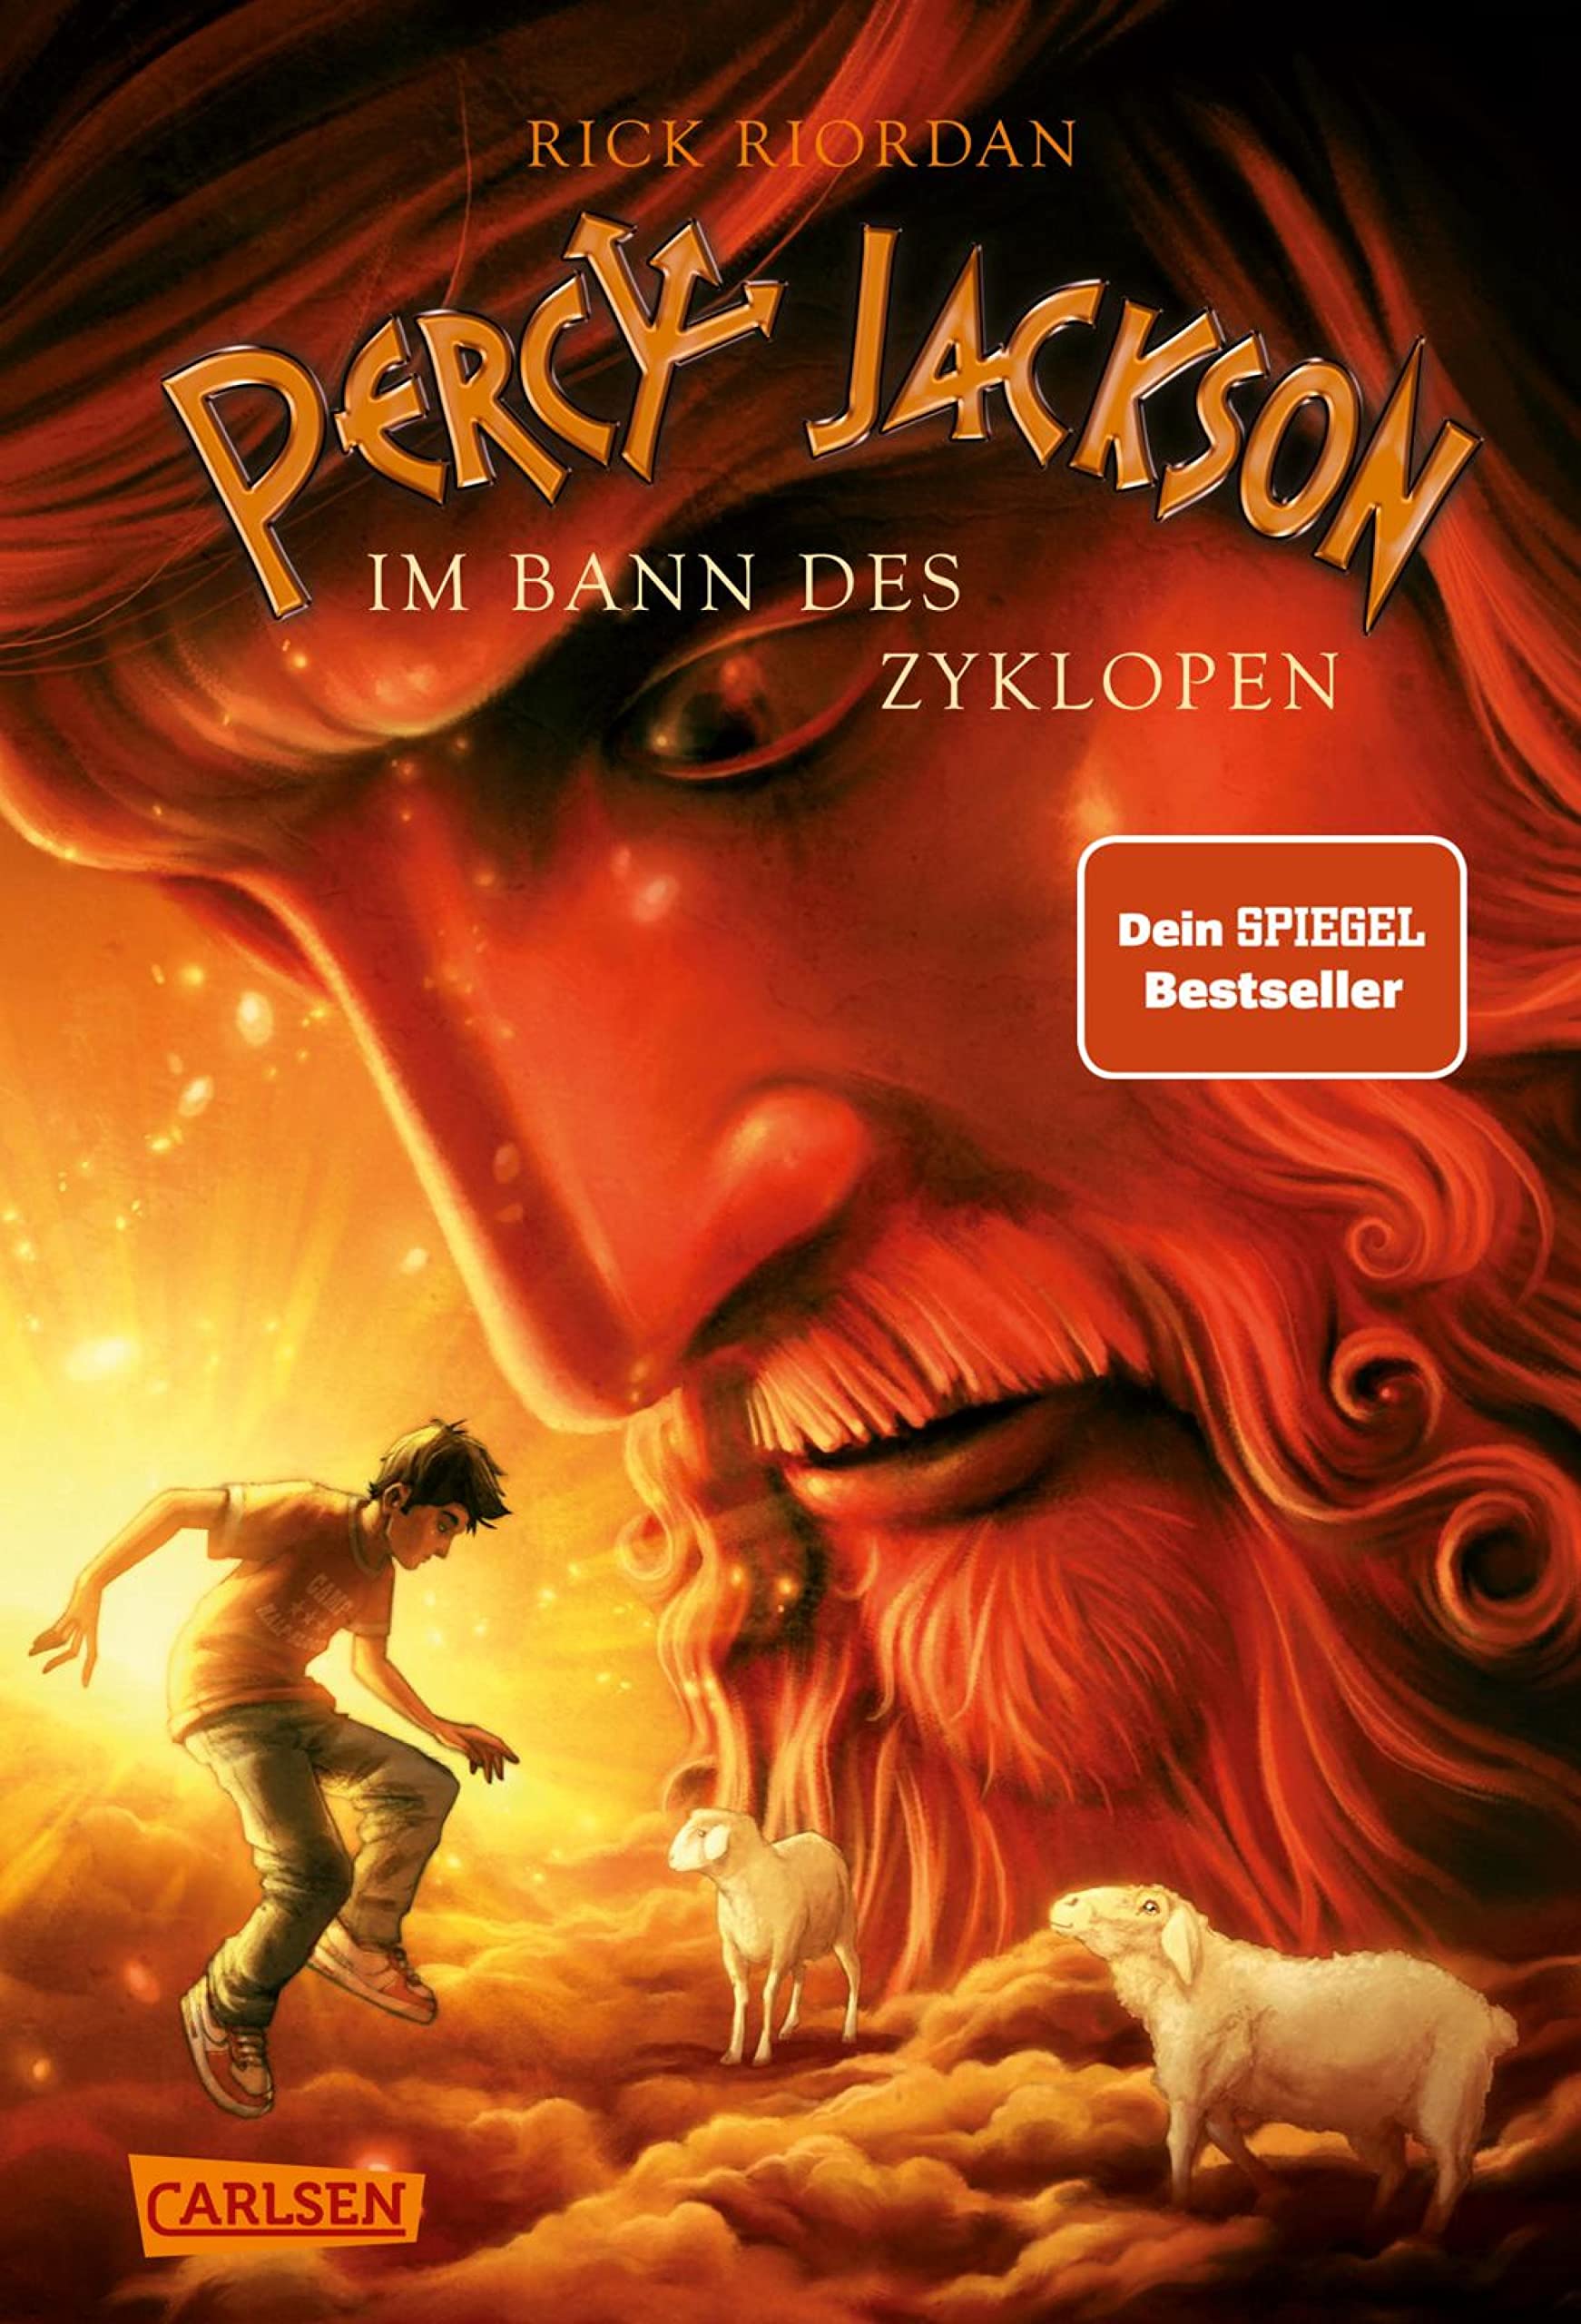 Percy Jackson 2: Im Bann des Zyklopen: Moderne Teenager, griechische Götter und nachtragende Monster - die Fantasy-Bestsellerserie ab 12 Jahren (German Edition)